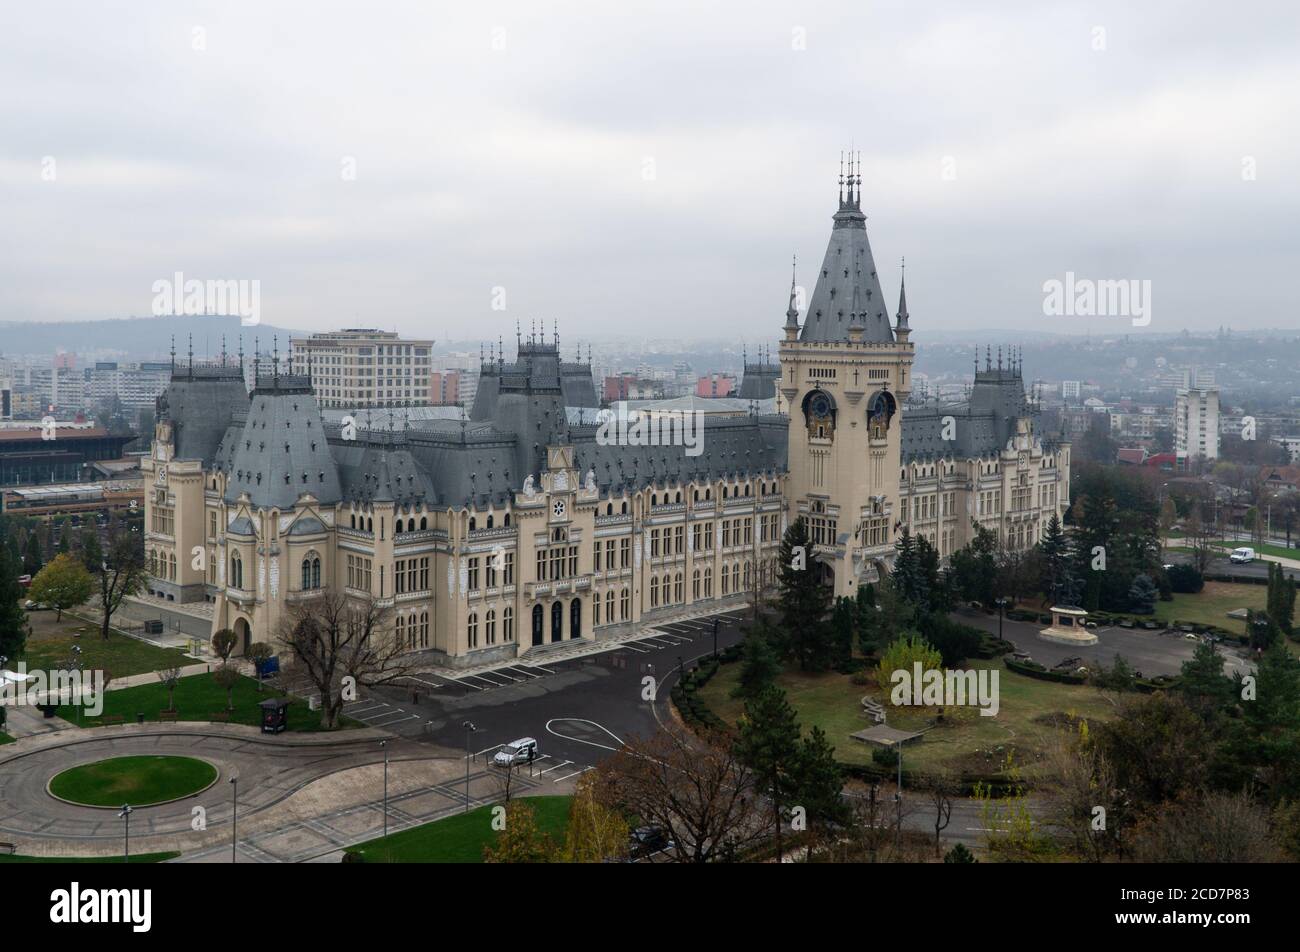 Iasi, Rumänien - 11.11.2019: Der Iasi-Kulturpalast an einem düsteren Herbstmorgen Stockfoto